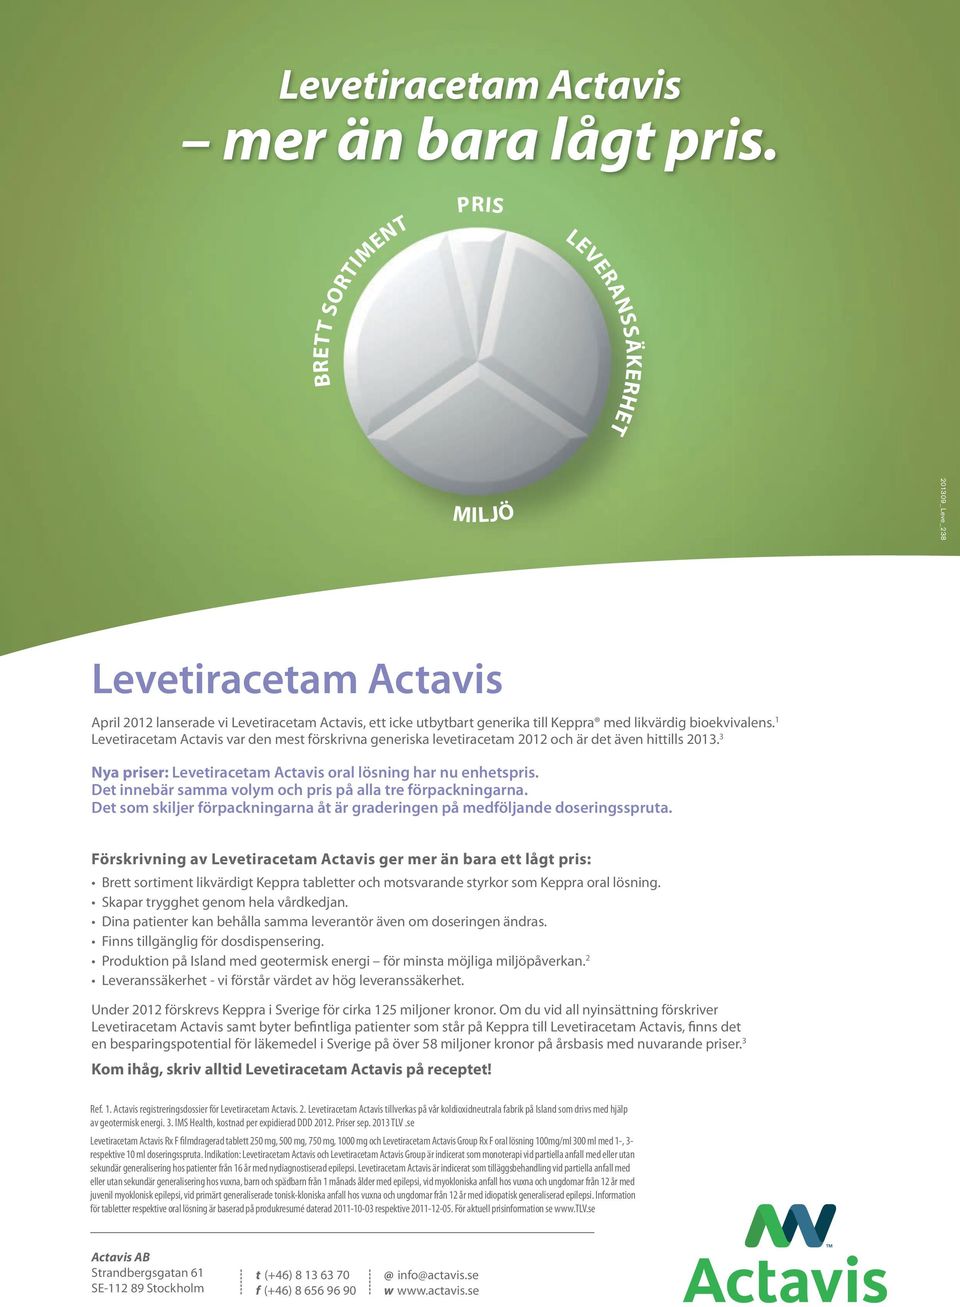 1 Levetiracetam Actavis var den mest förskrivna generiska levetiracetam 2012 och är det även hittills 2013. 3 Nya priser: Levetiracetam Actavis oral lösning har nu enhetspris.